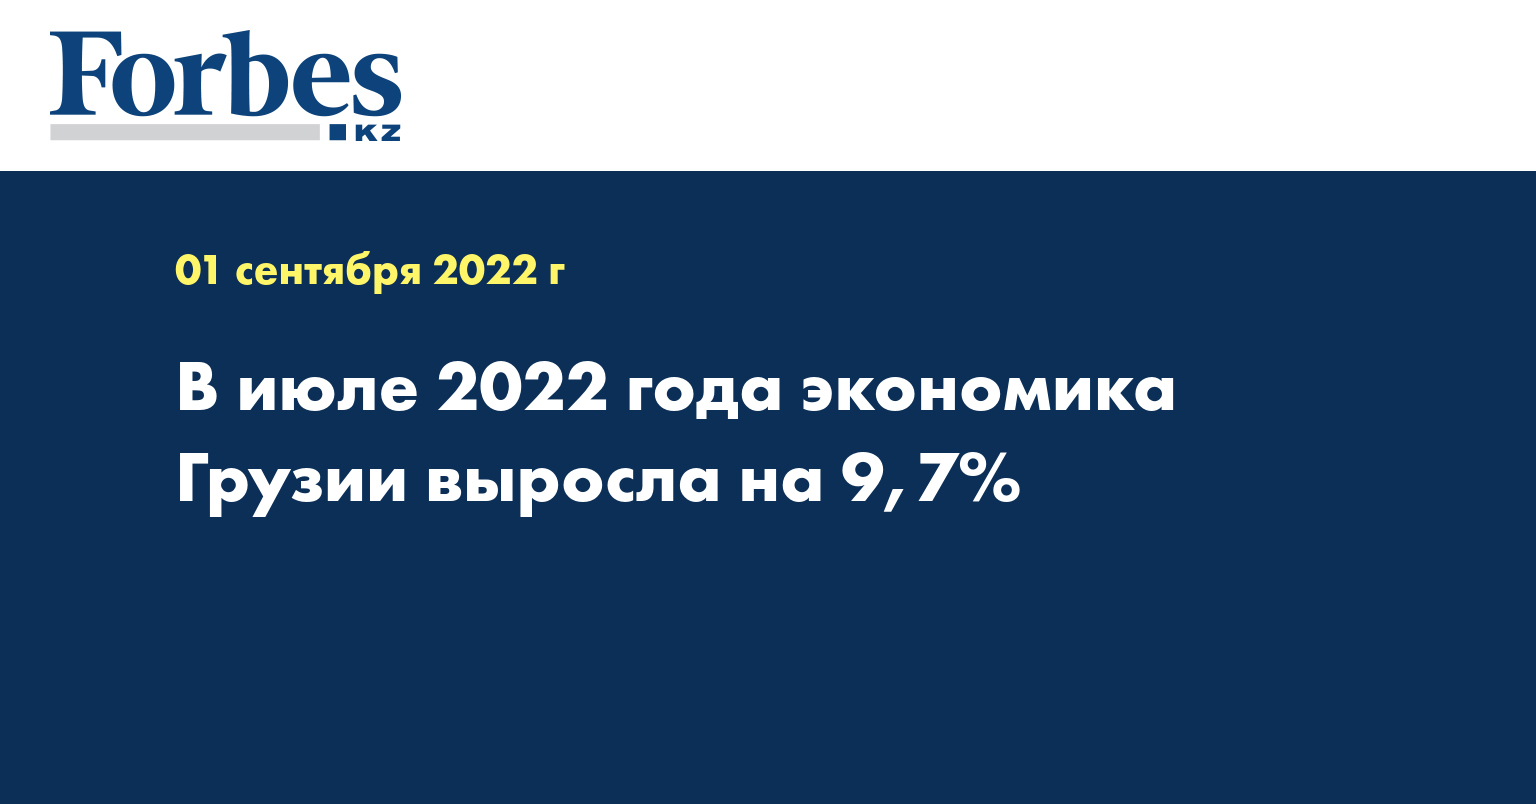 В июле 2022 года экономика Грузии выросла на 9,7%